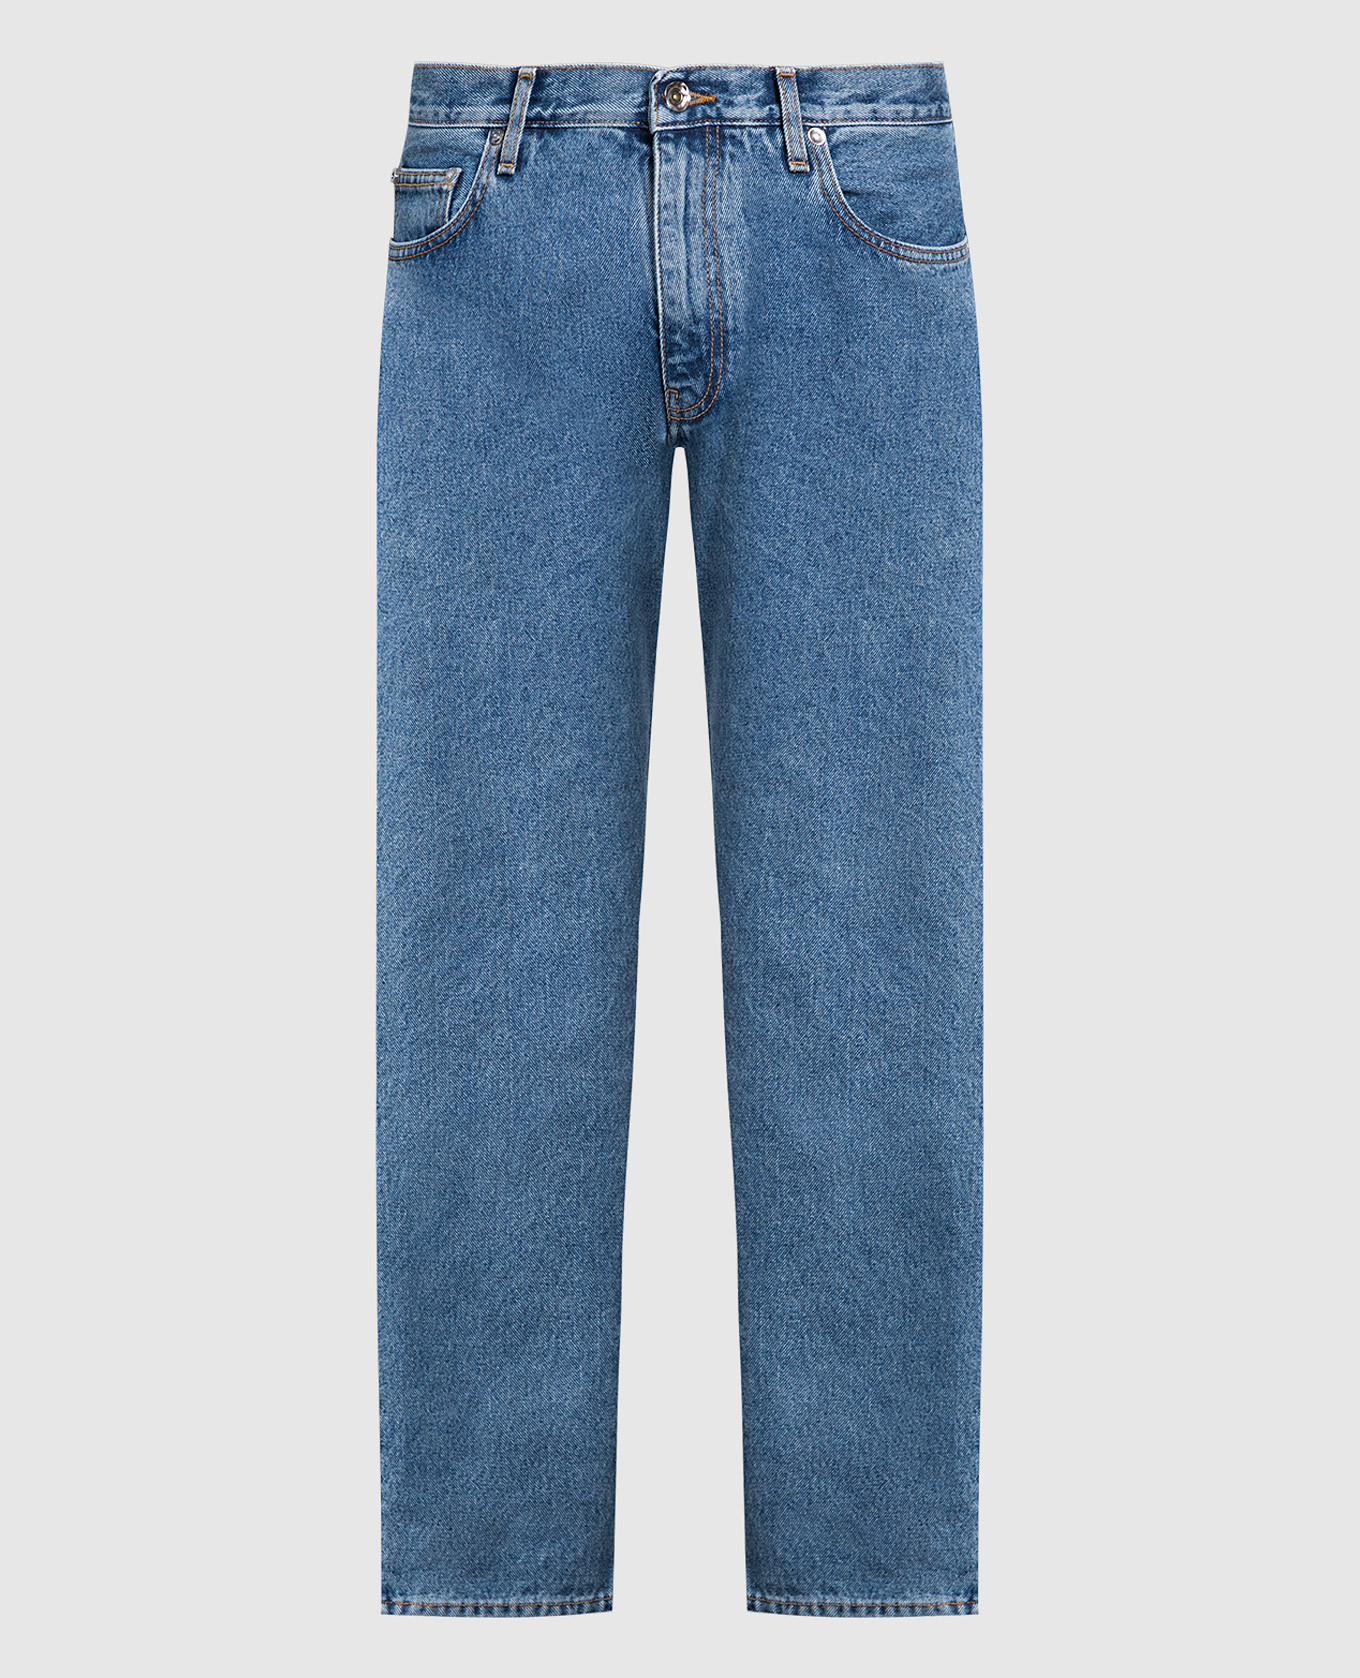 Голубые джинсы с вышивкой эмблемы